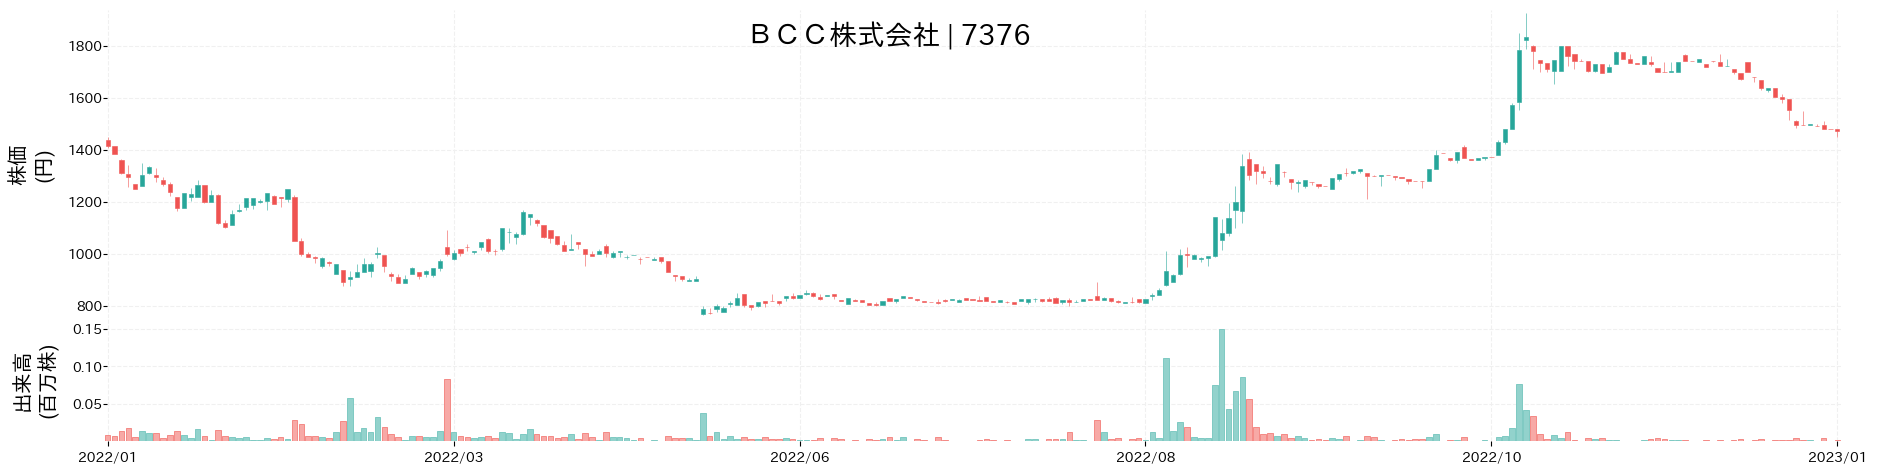 BCCの株価推移(2022)